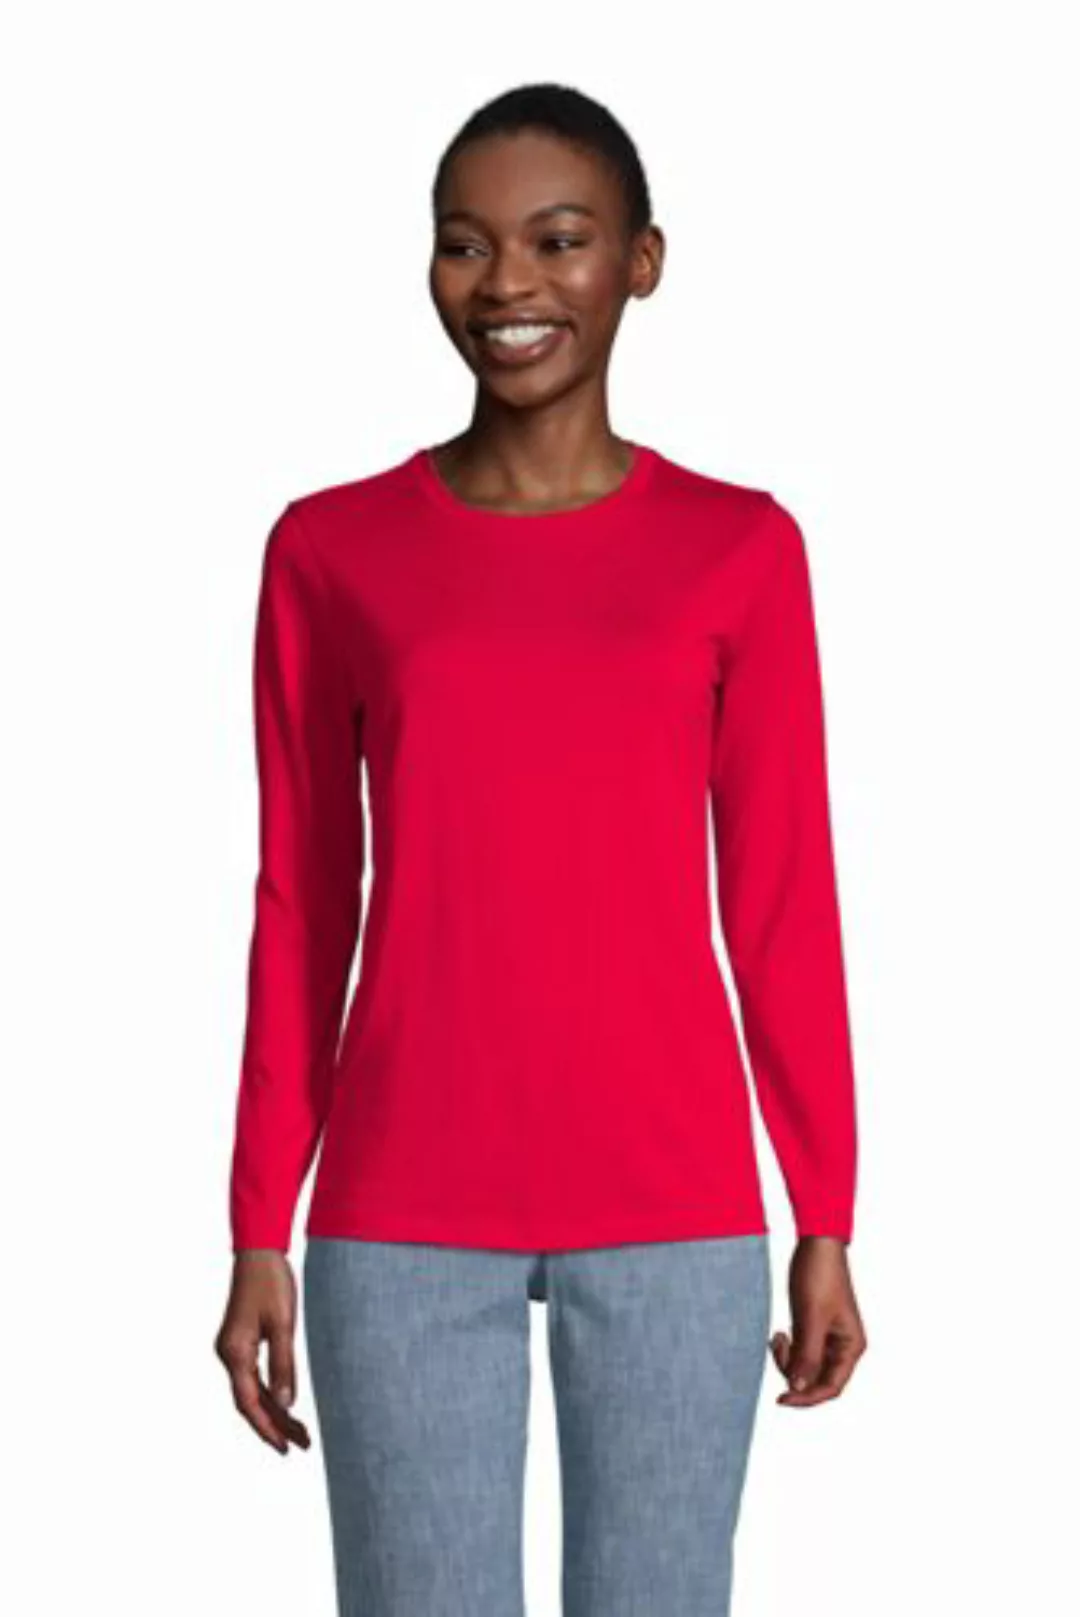 Supima-Shirt, Langarm in Petite-Größe, Damen, Größe: S Petite, Rot, Baumwol günstig online kaufen